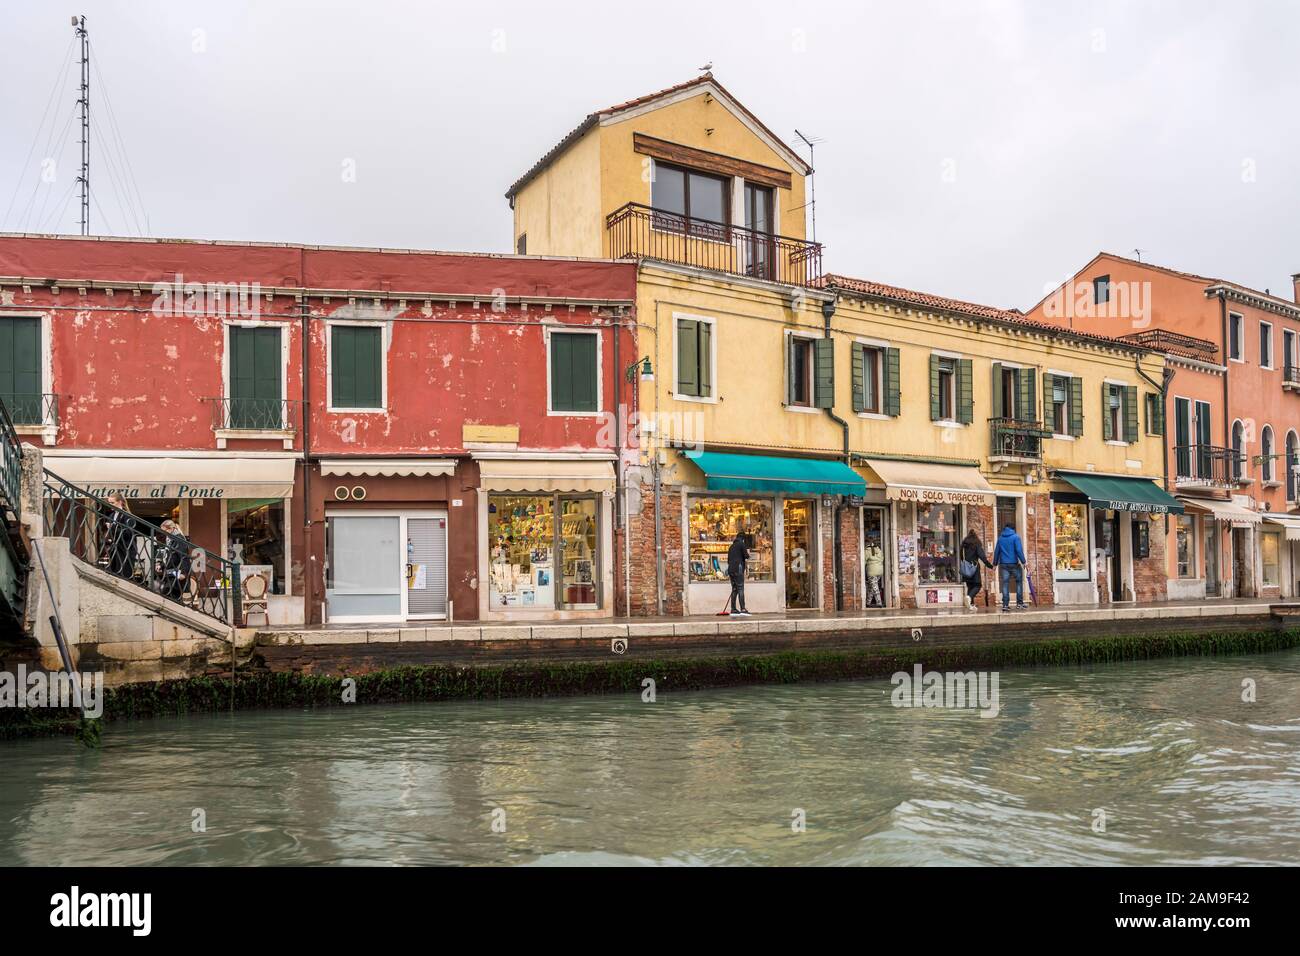 Venezia, ITALIA - 29 ottobre 2019: Paesaggio urbano con vecchie case e negozi sul lungofiume dei canali, girato il 29 ottobre 2019 in luminosa luce autunnale torbida a Muran Foto Stock